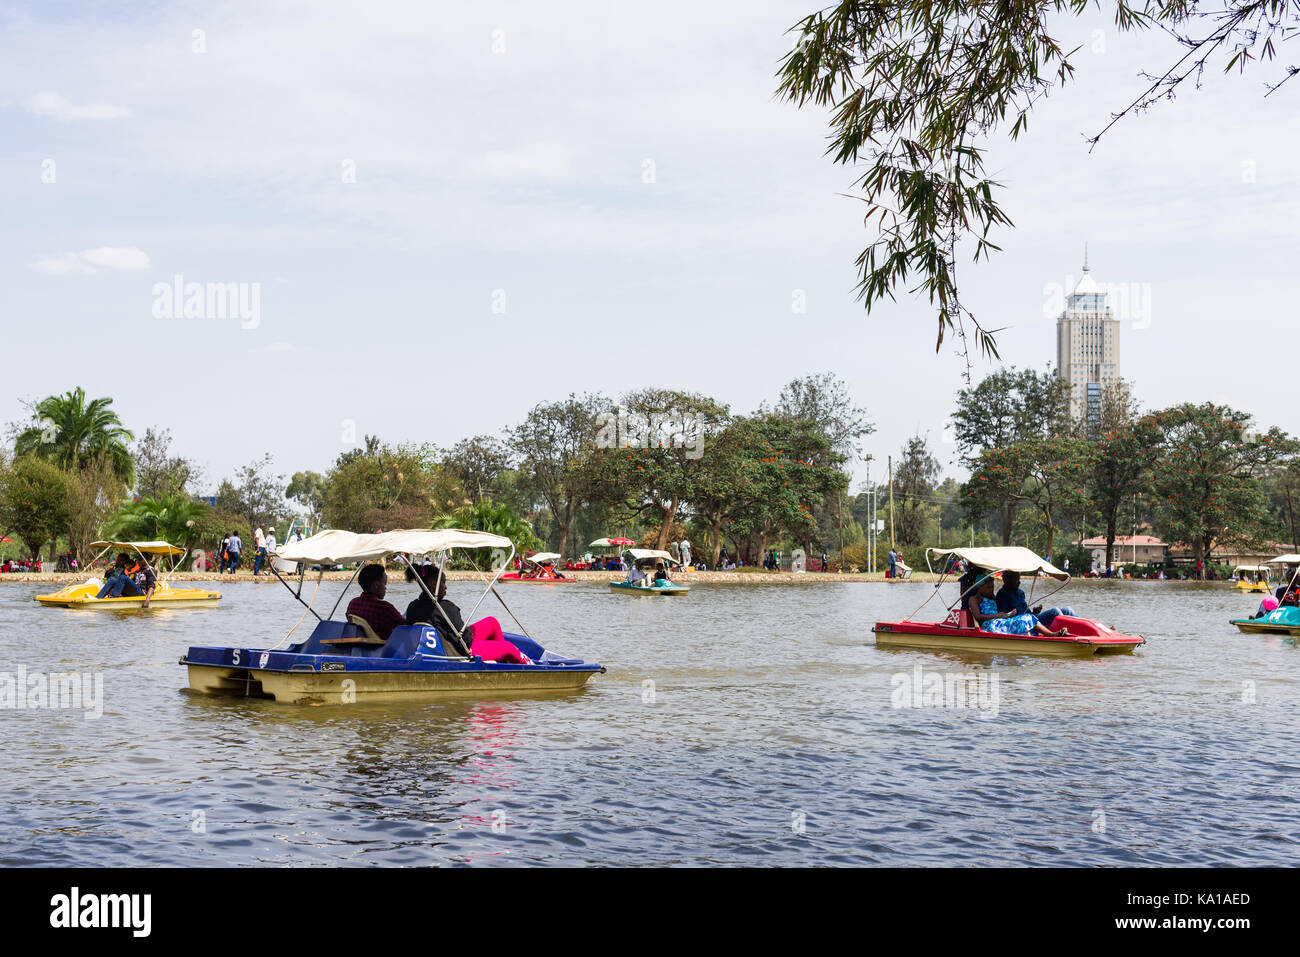 Leute genießen feilbieten, Bootsfahrten sowie sitzt von See und beobachten Sie, Uhuru Park, Nairobi, Kenia, Ostafrika Stockfoto